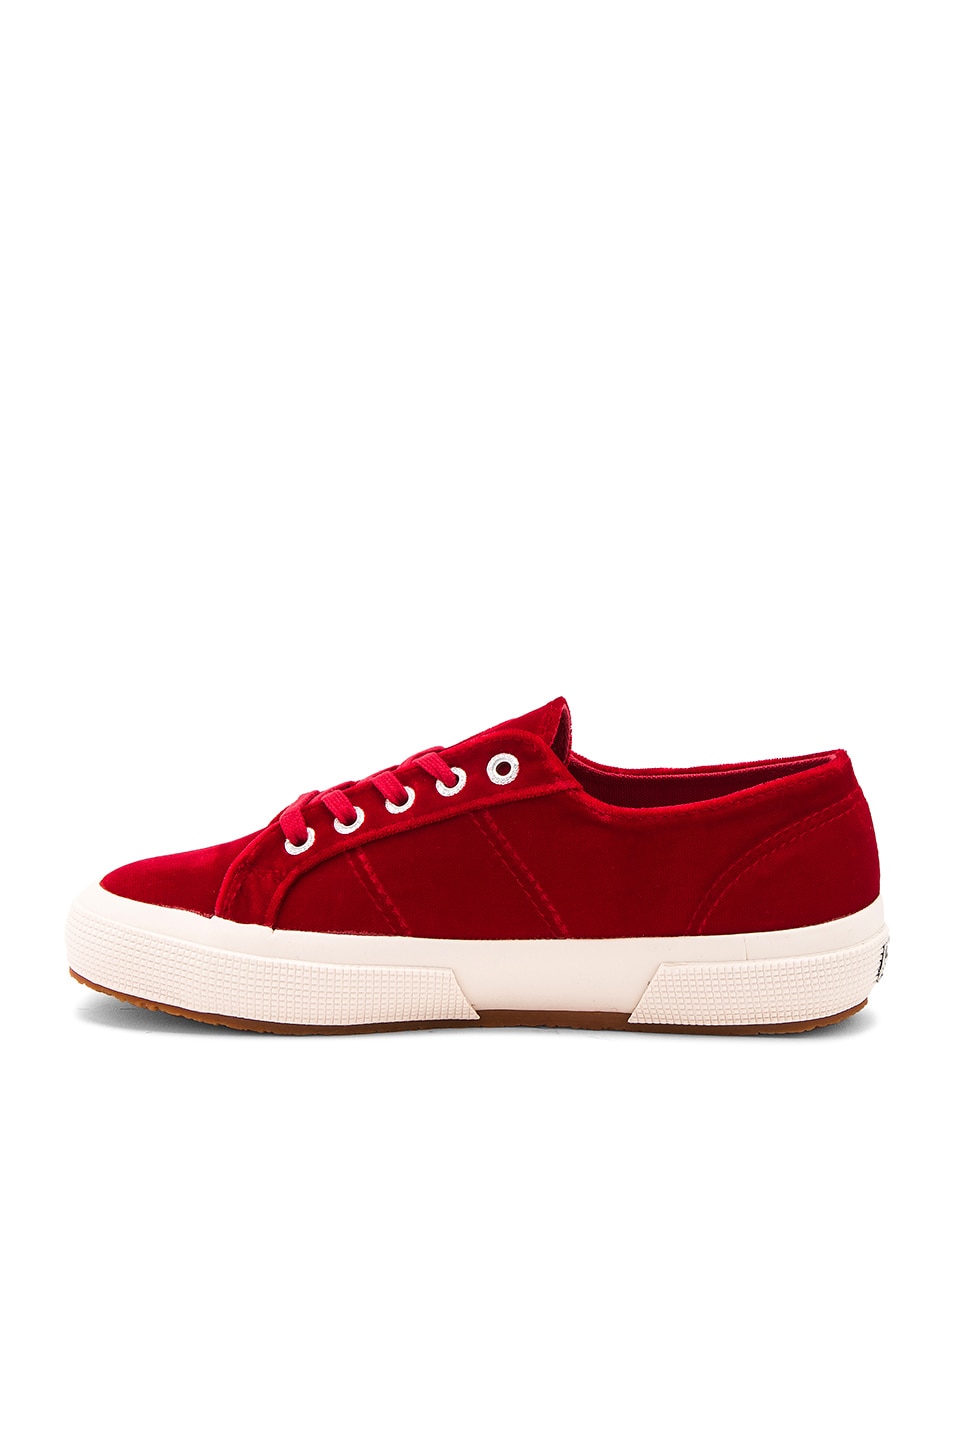 SUPERGA 2750 Velvet Sneaker, Red | ModeSens